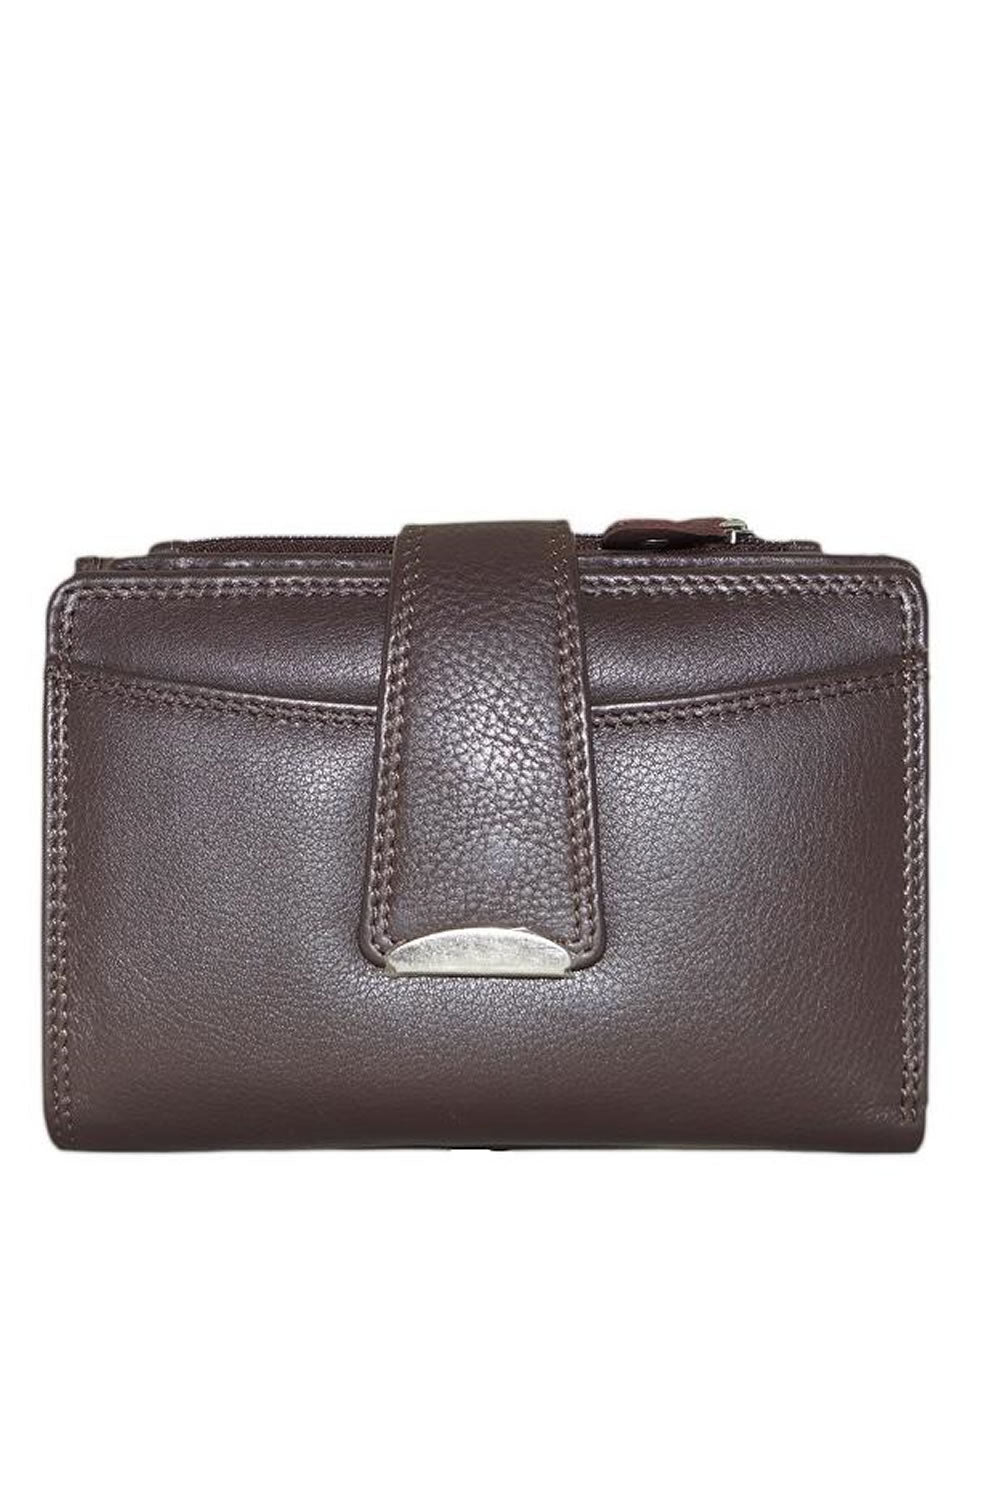 Cenzoni RFID Medium Leather Ladies Wallet